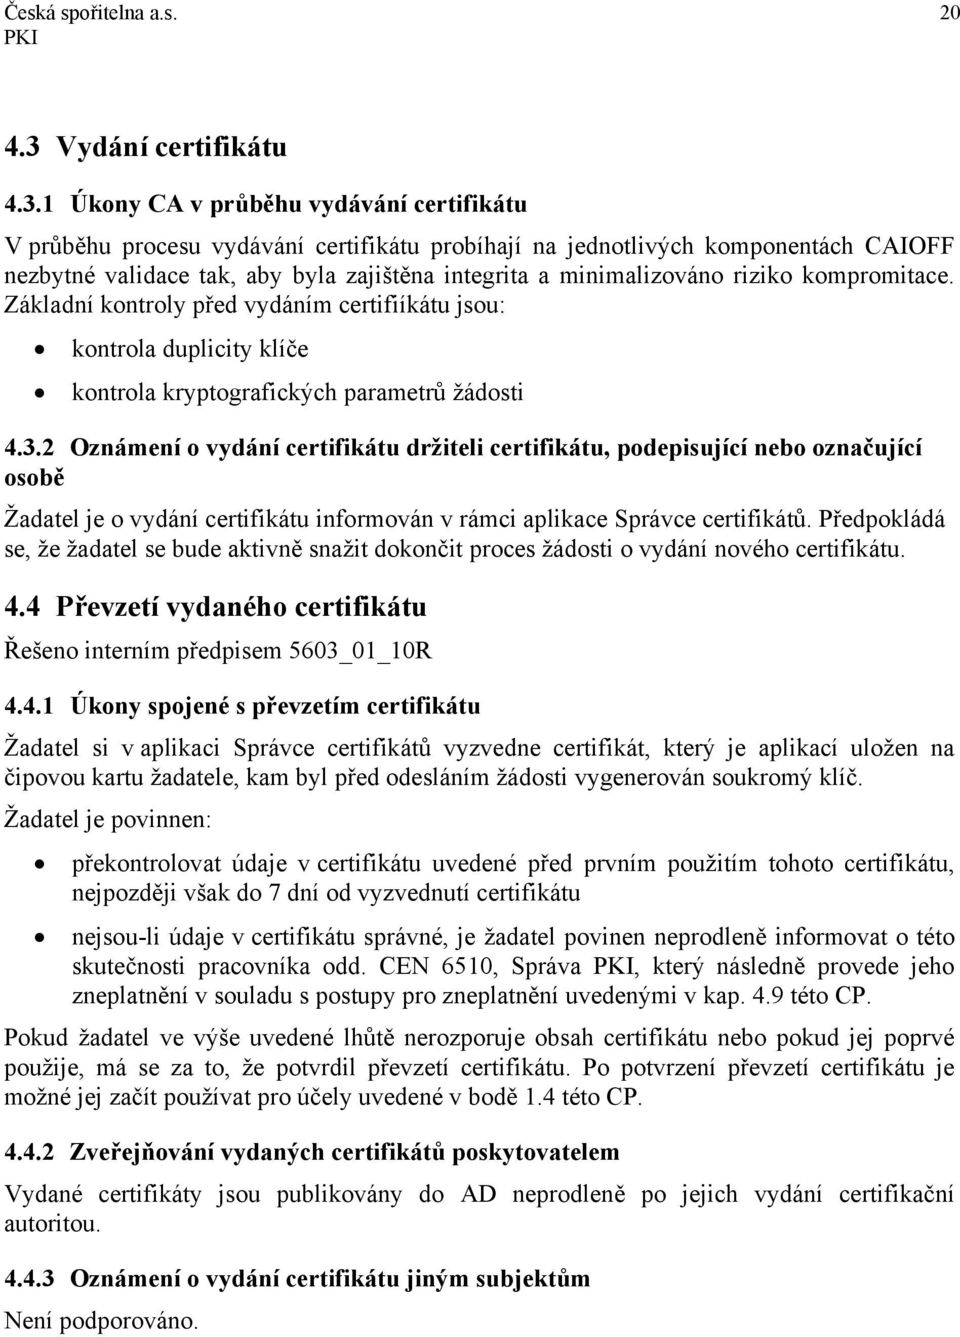 1 Úkony CA v průběhu vydávání certifikátu V průběhu procesu vydávání certifikátu probíhají na jednotlivých komponentách CAIOFF nezbytné validace tak, aby byla zajištěna integrita a minimalizováno